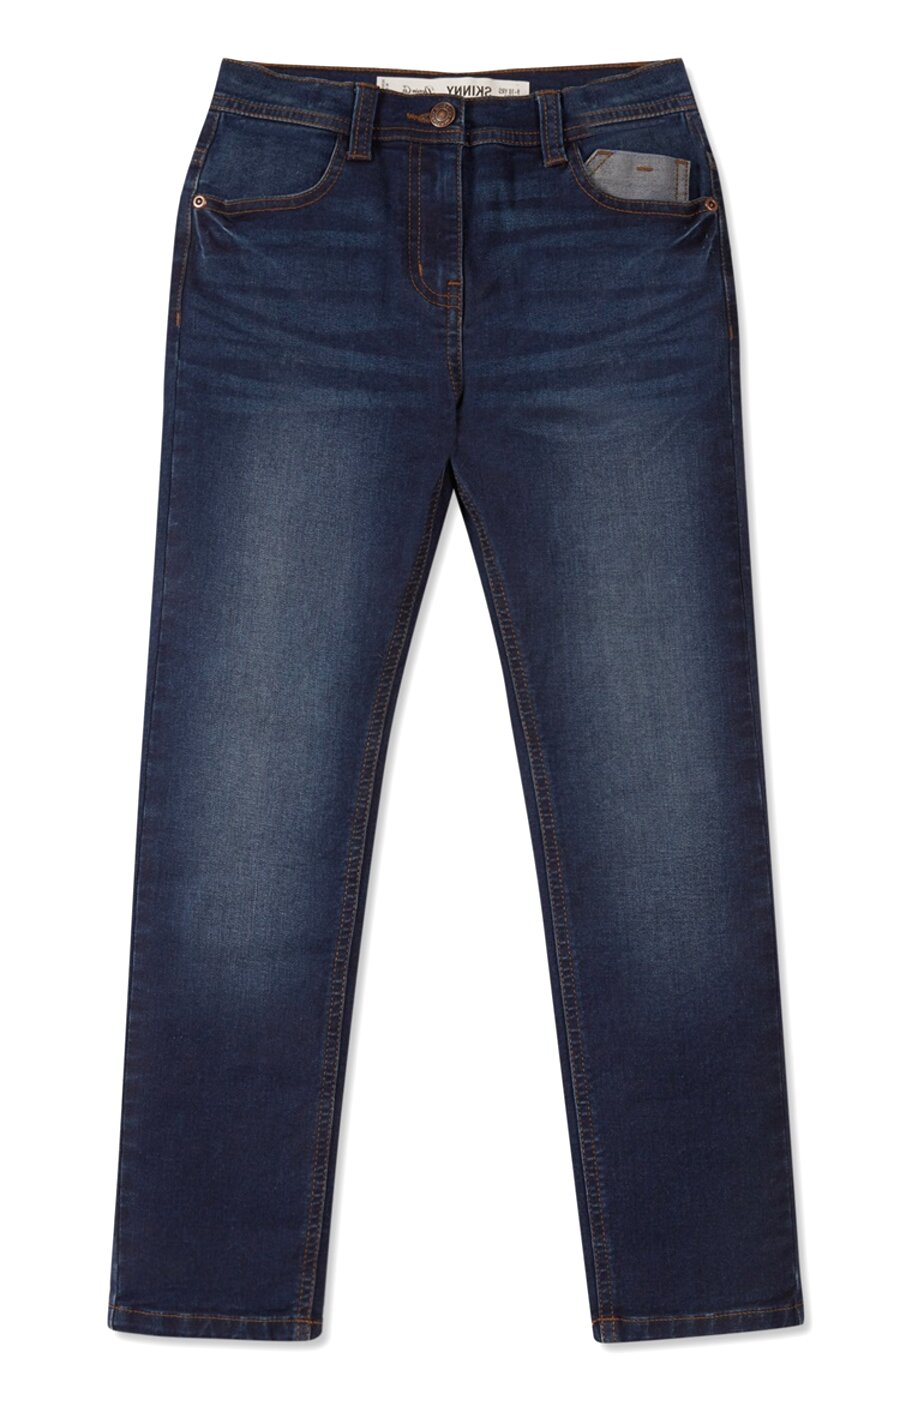 Mens Primark Jeans for sale in UK | 65 used Mens Primark Jeans